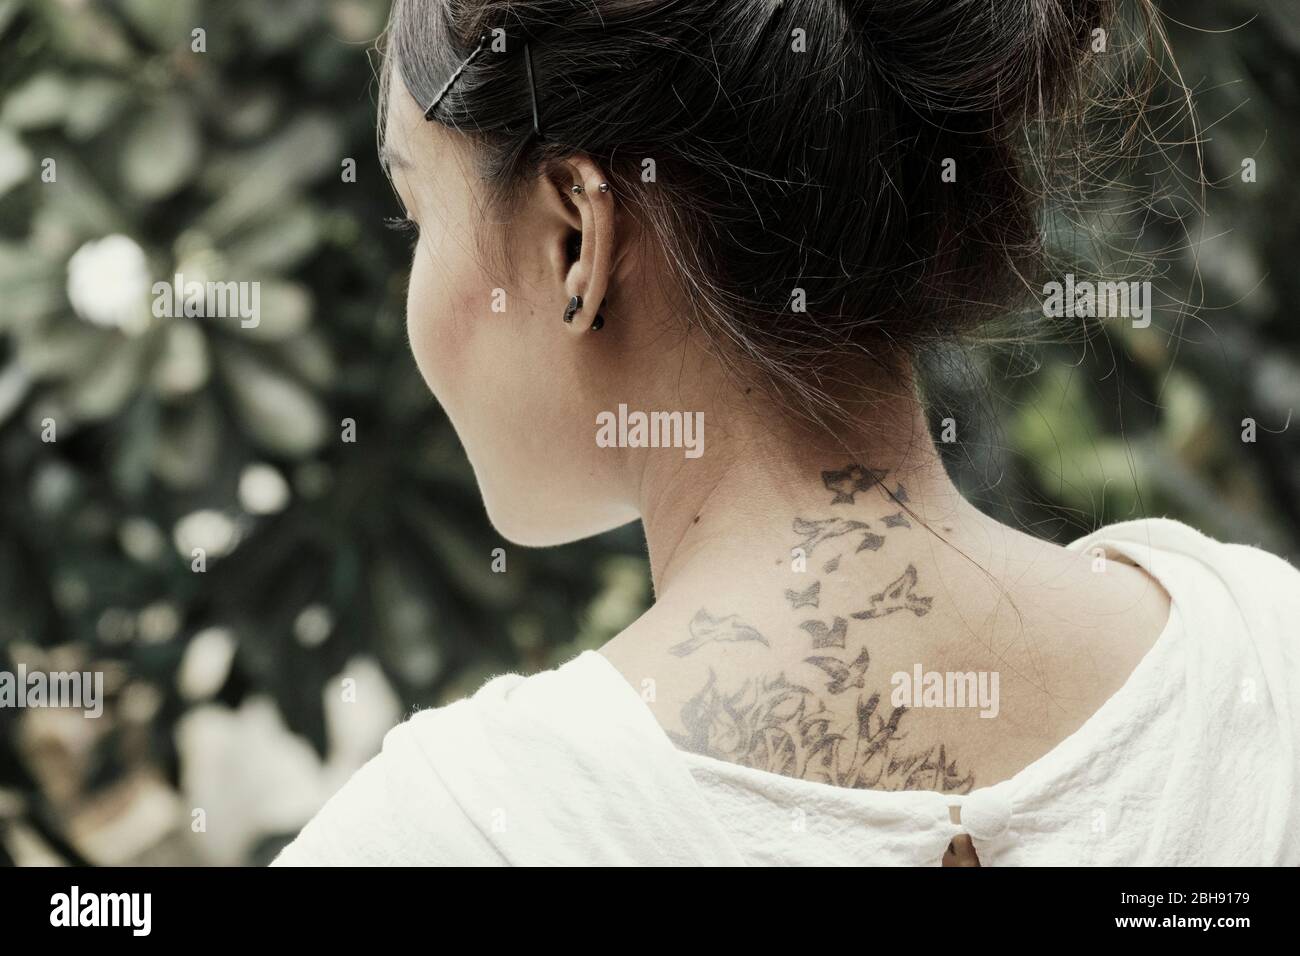 Giovane, bella ragazza tailandese con tatuaggio sul collo Foto Stock